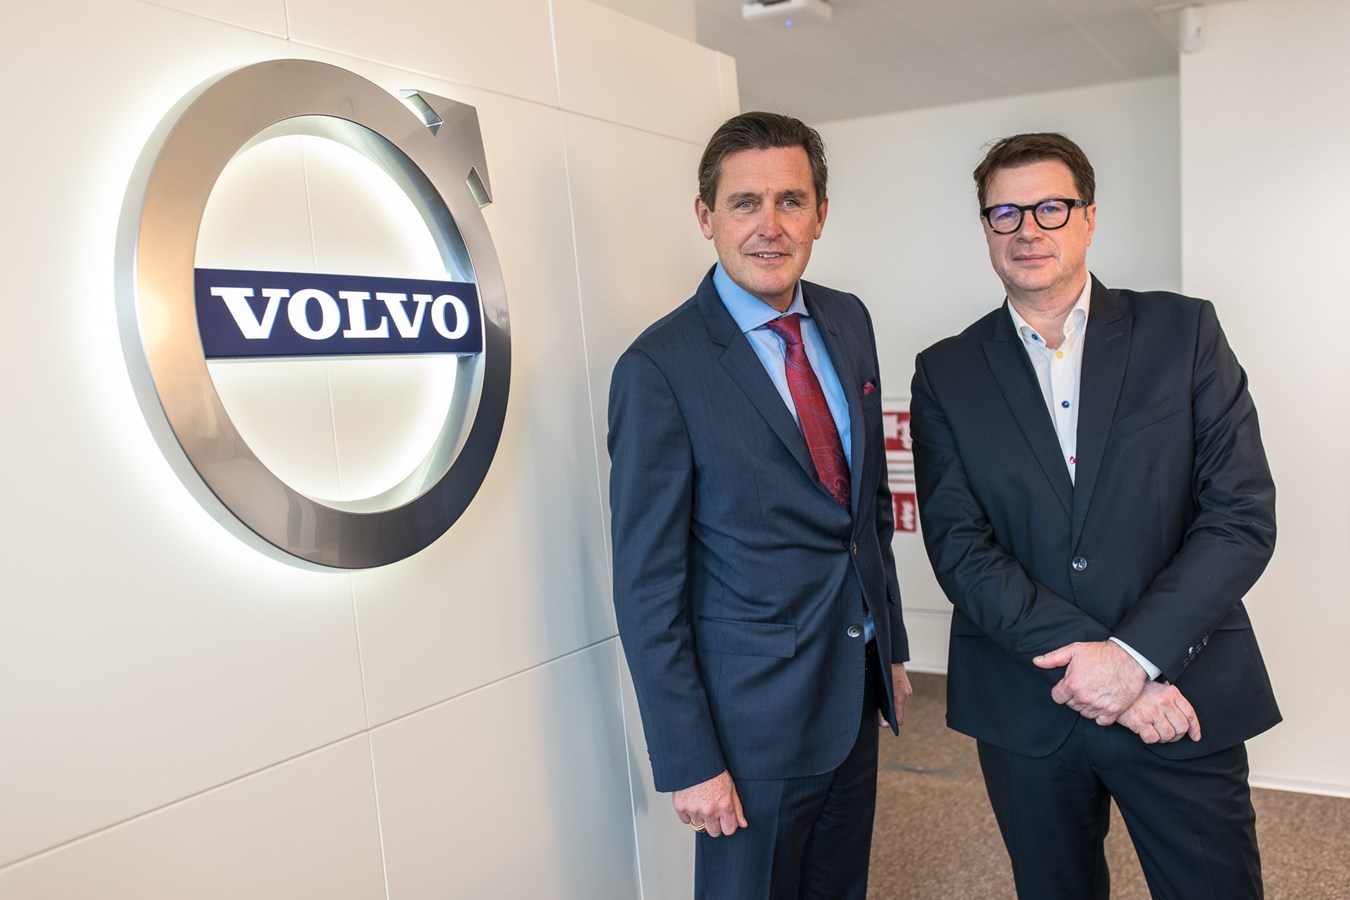 Neuer Unternehmensstandort im Viertel 2: Volvo goes Downtown